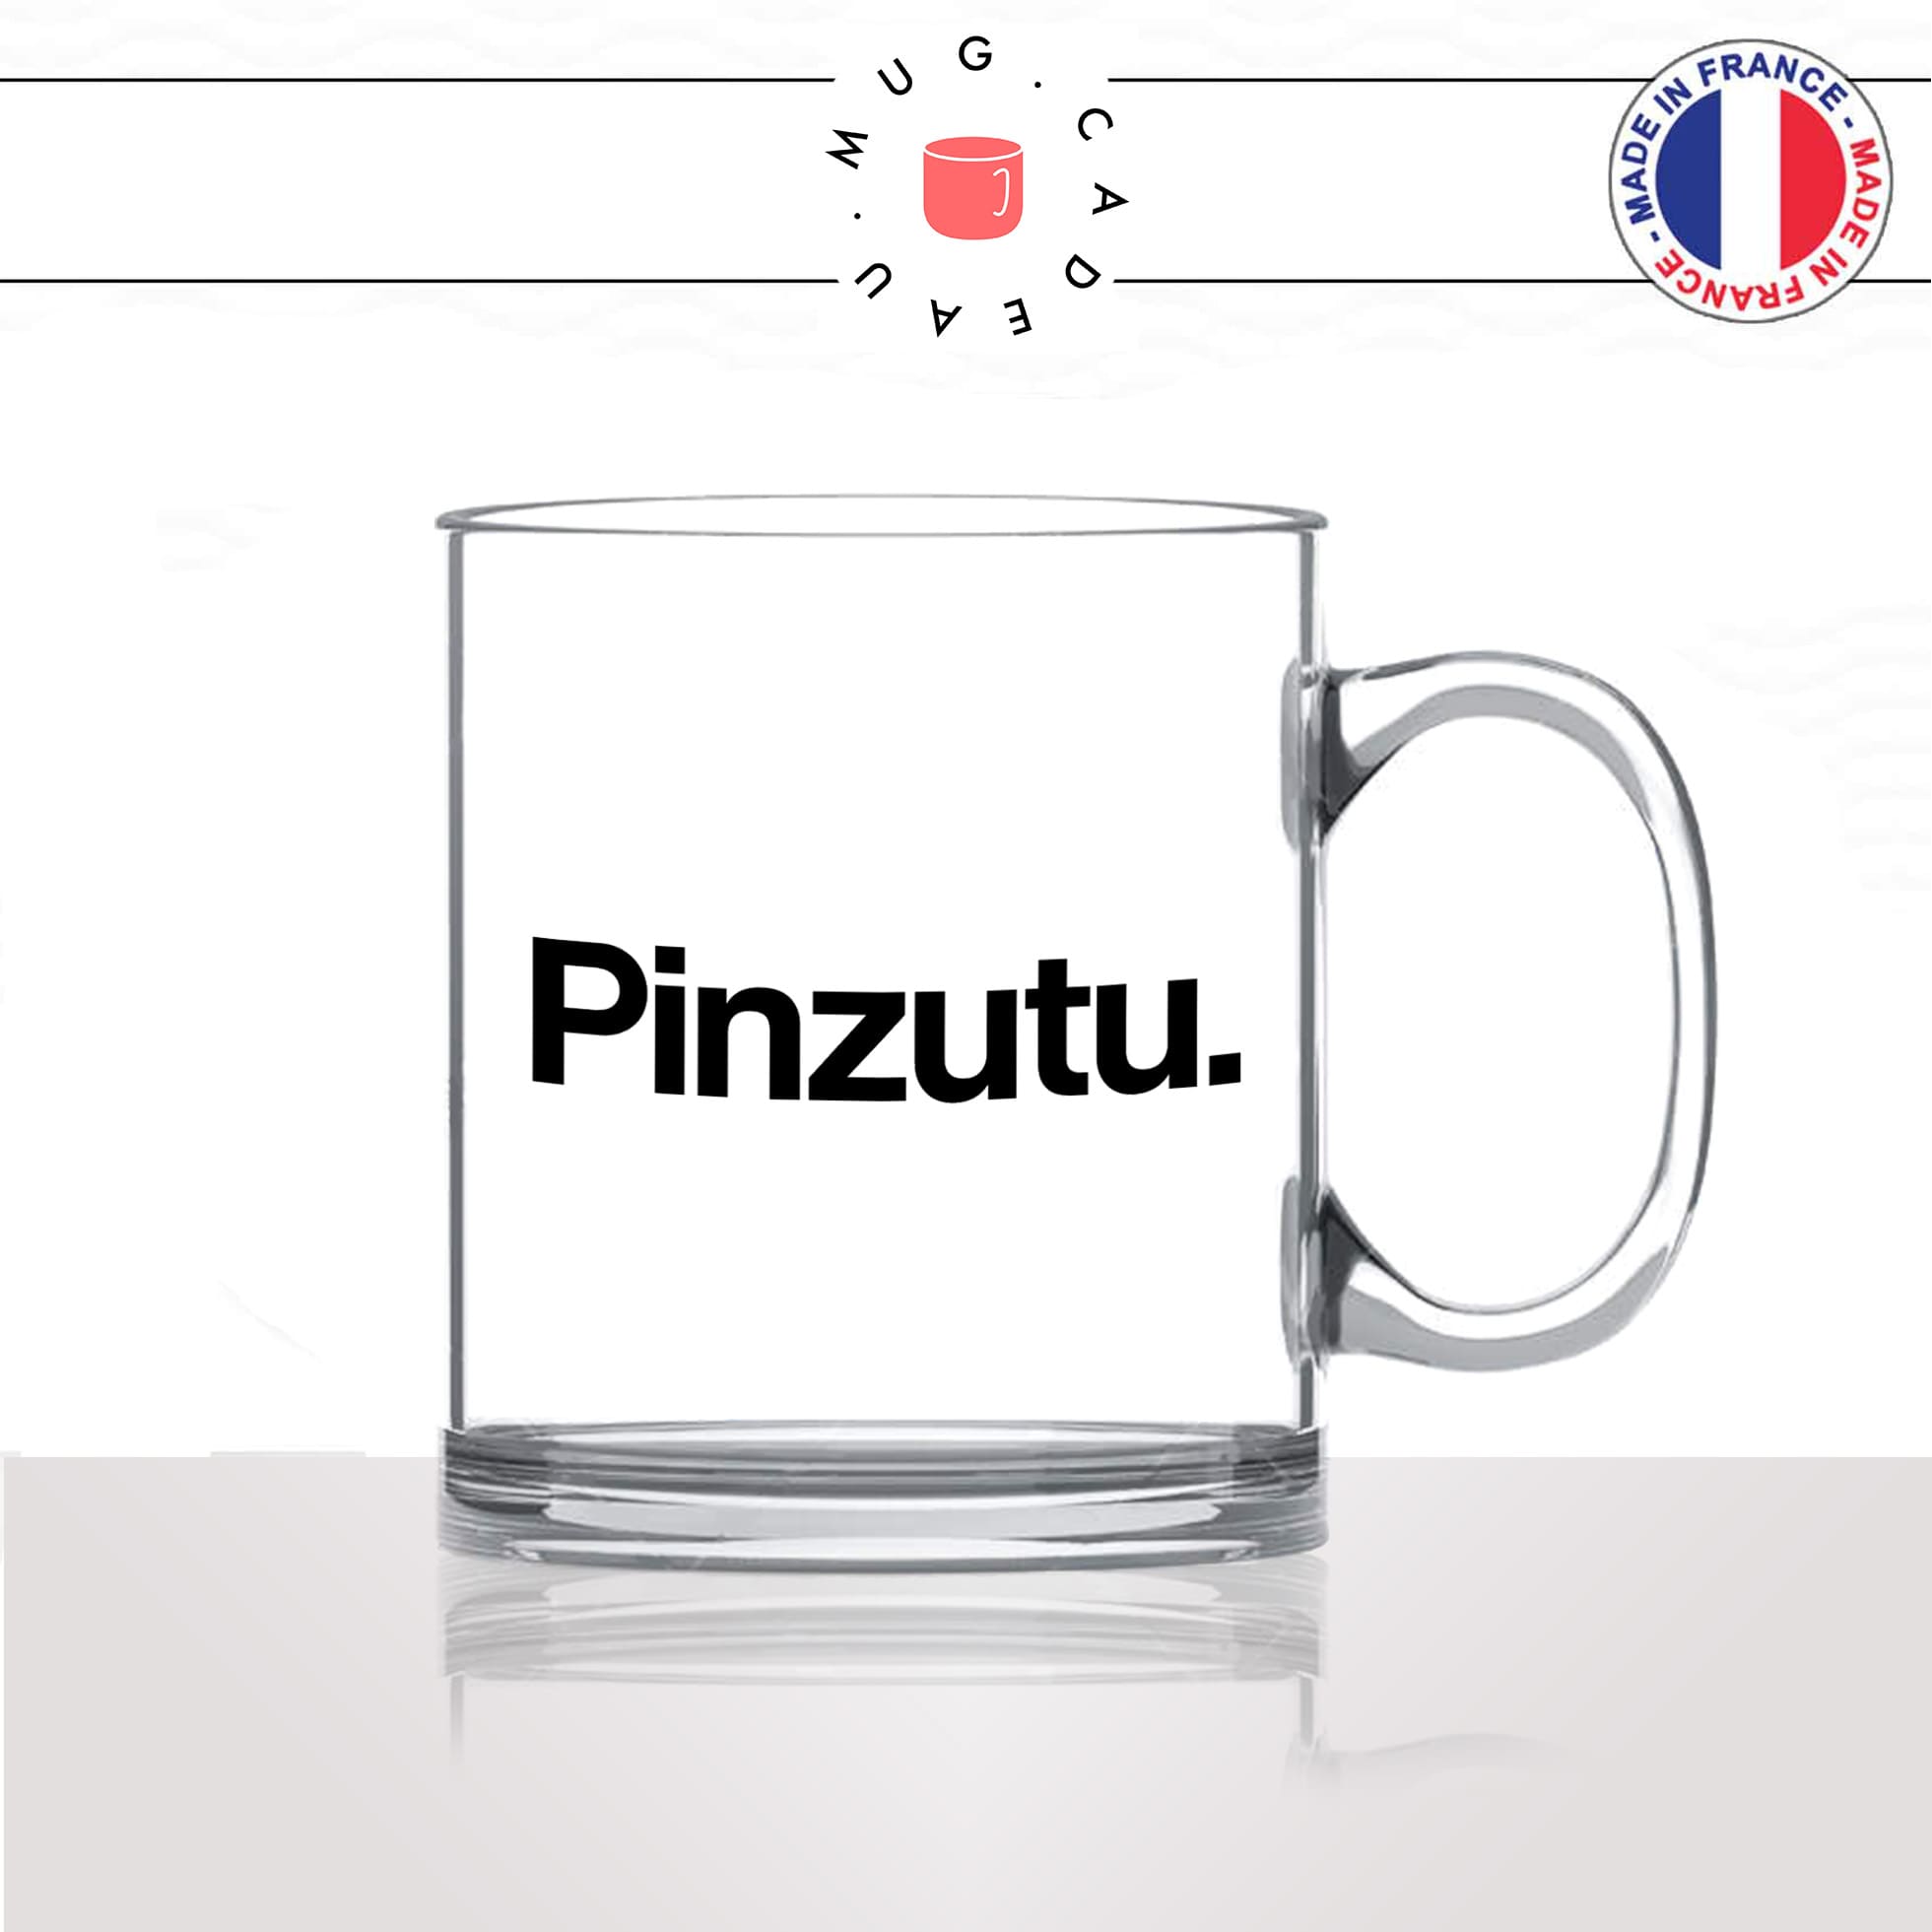 mug-tasse-en-verre-transparent-glass-pinzutu-touriste-corse-corsica-patois-langue-ile-de-beauté-france-francais-idée-cadeau-fun-cool-café-thé2